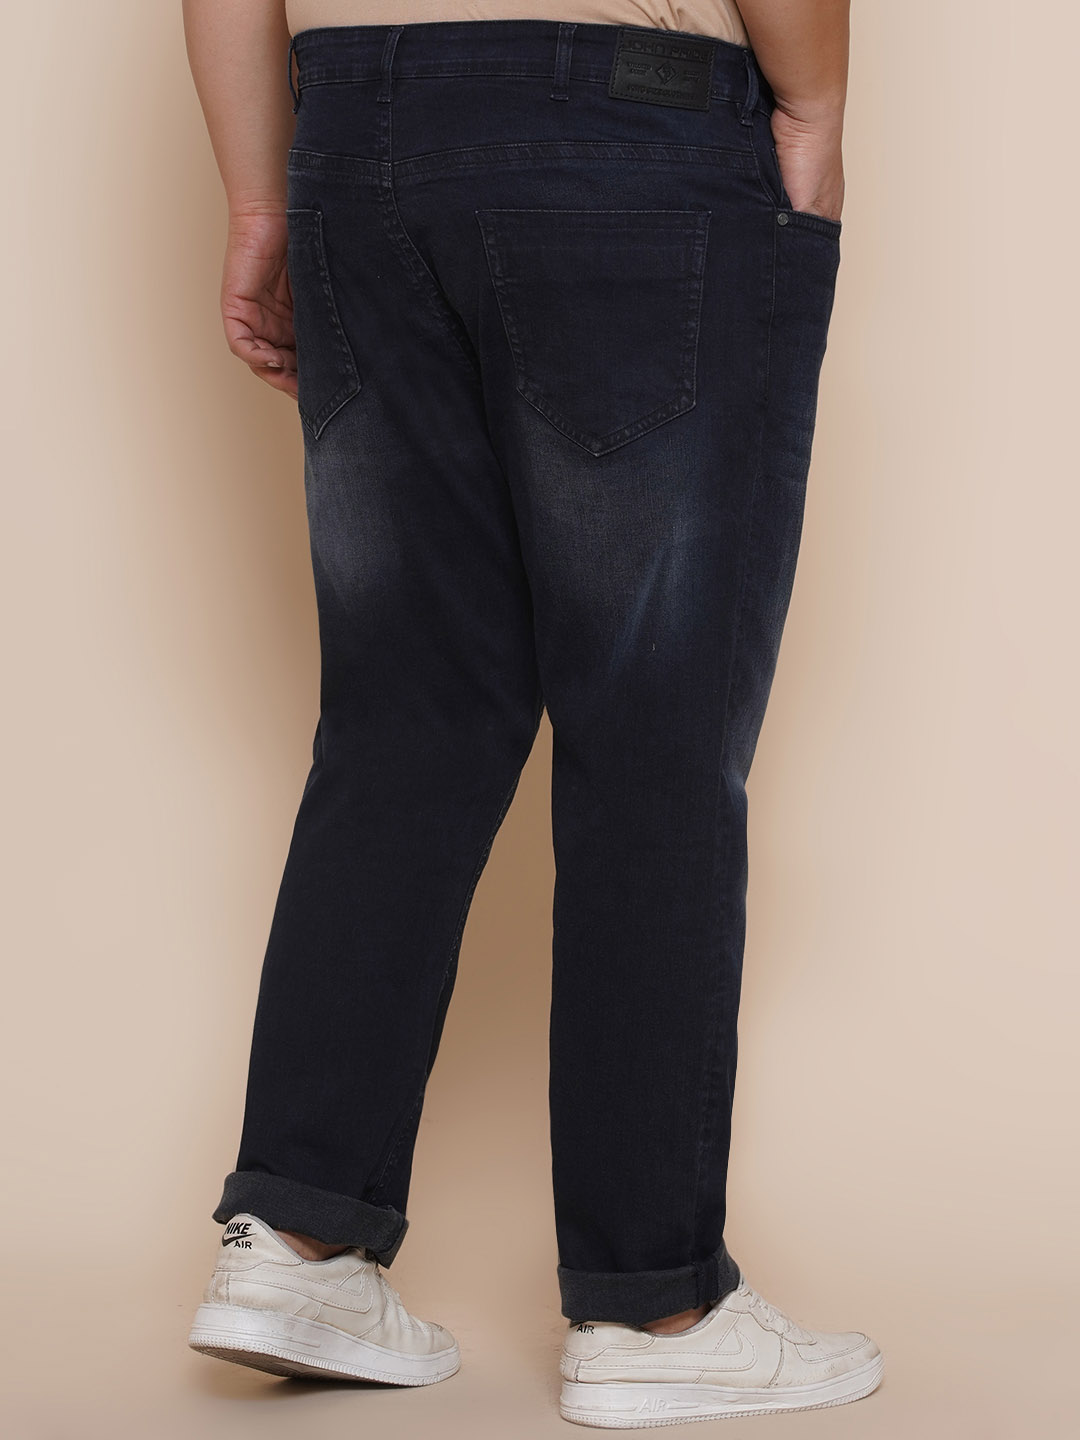 bottomwear/jeans/JPJ12283/jpj12283-5.jpg